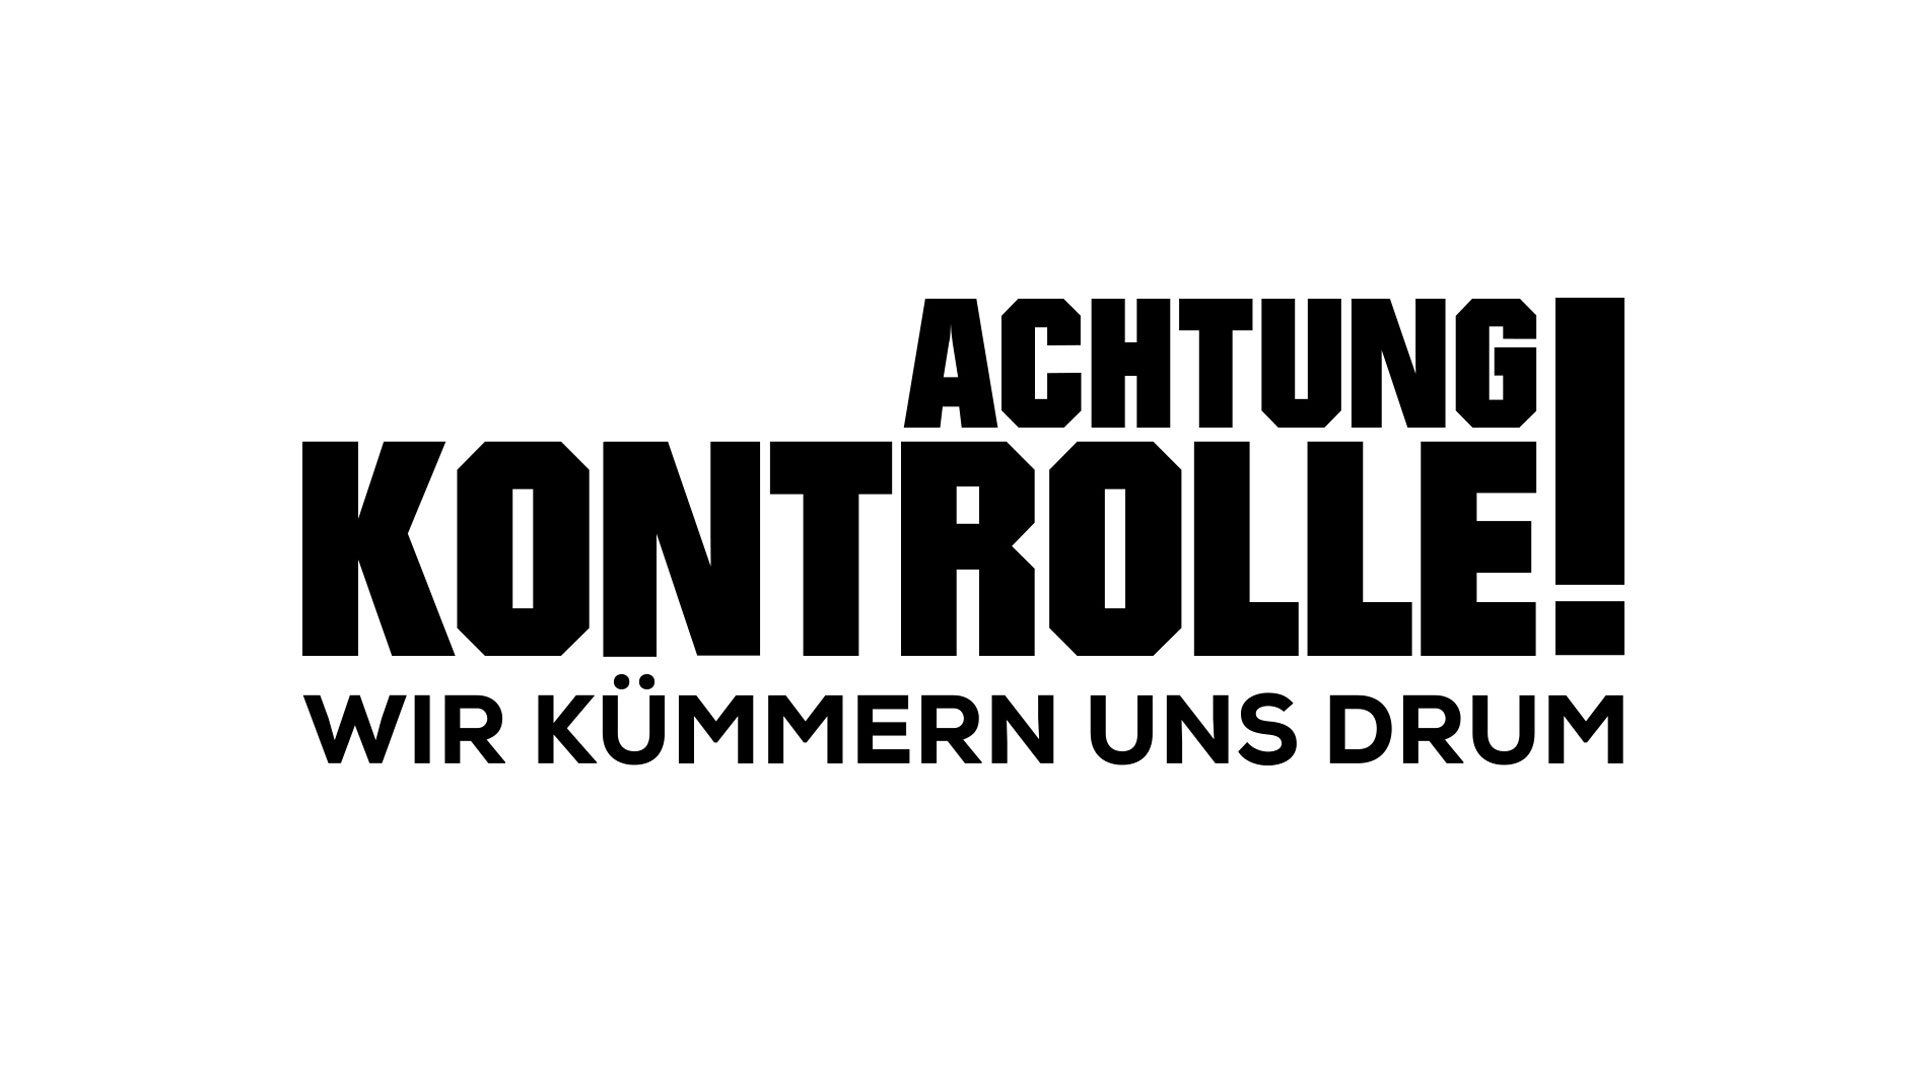 Alkoholkontrolle für LKW-Fahrer - Polizei Mainz